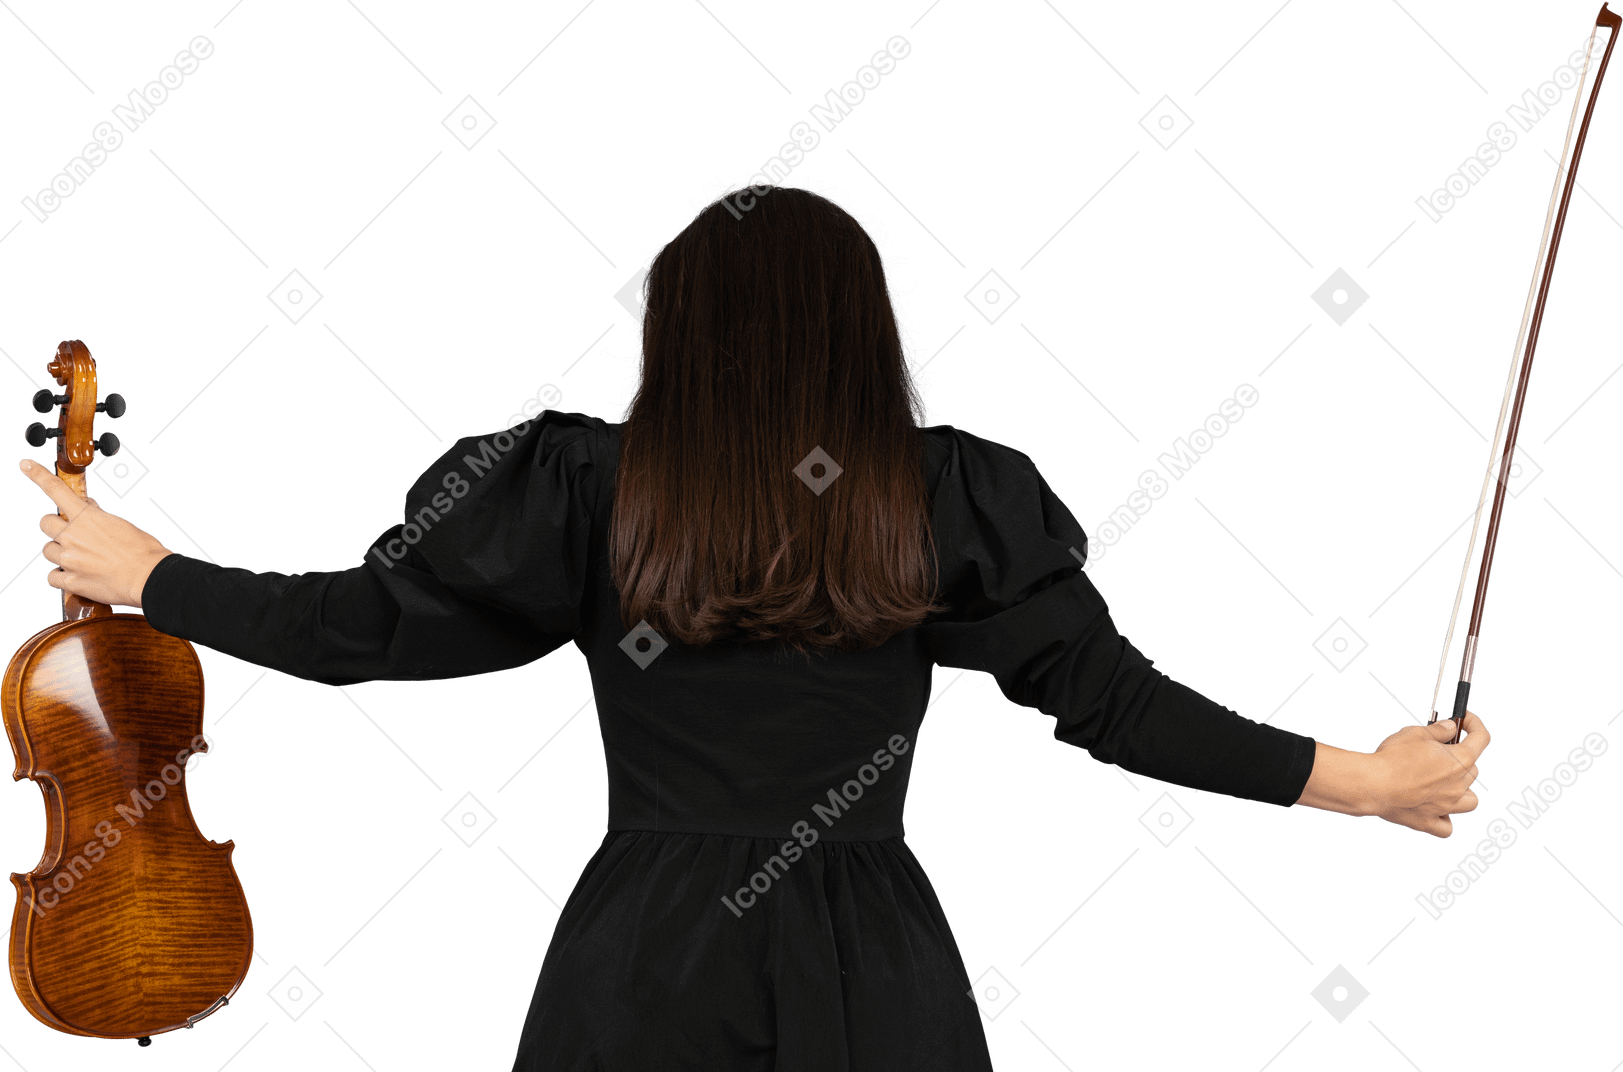 両手を広げて黒いドレスを着た女性のバイオリン奏者の後ろ姿